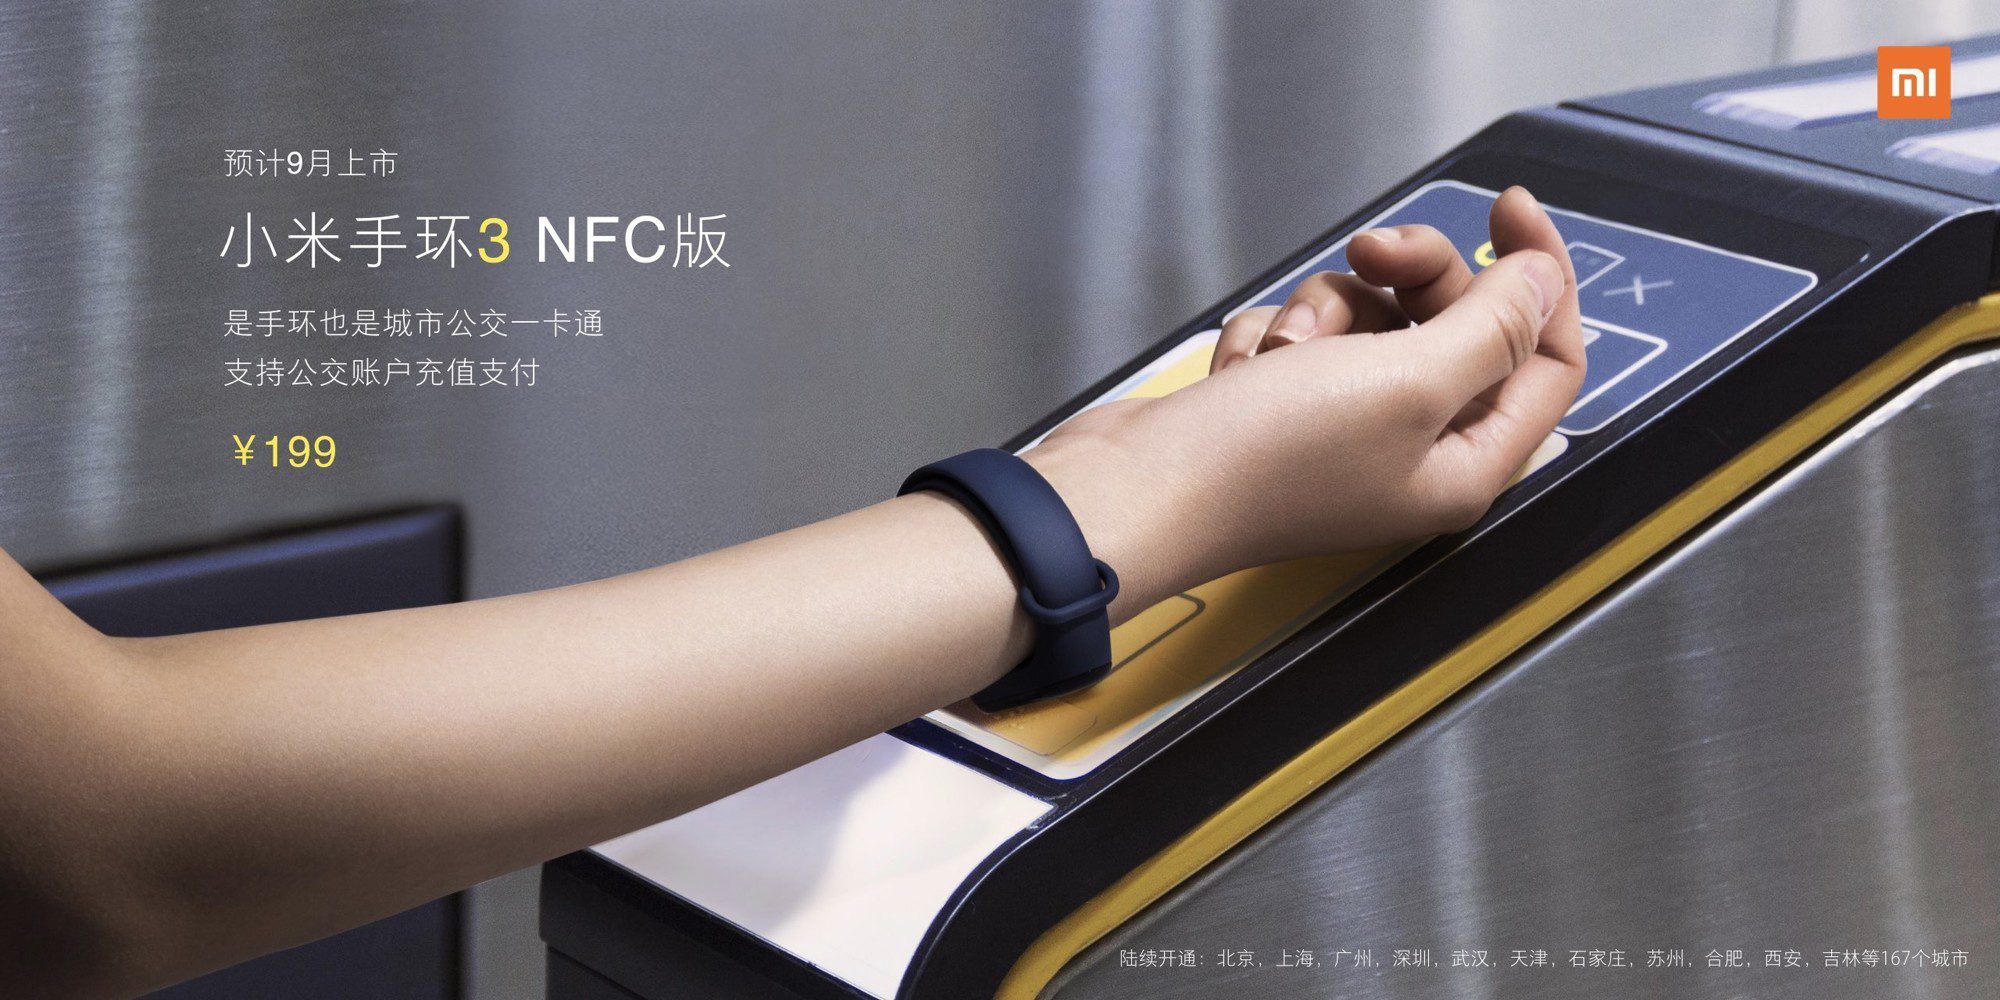 Новый фитнес-браслет Xiaomi Mi Band 3 с NFC представлен официально